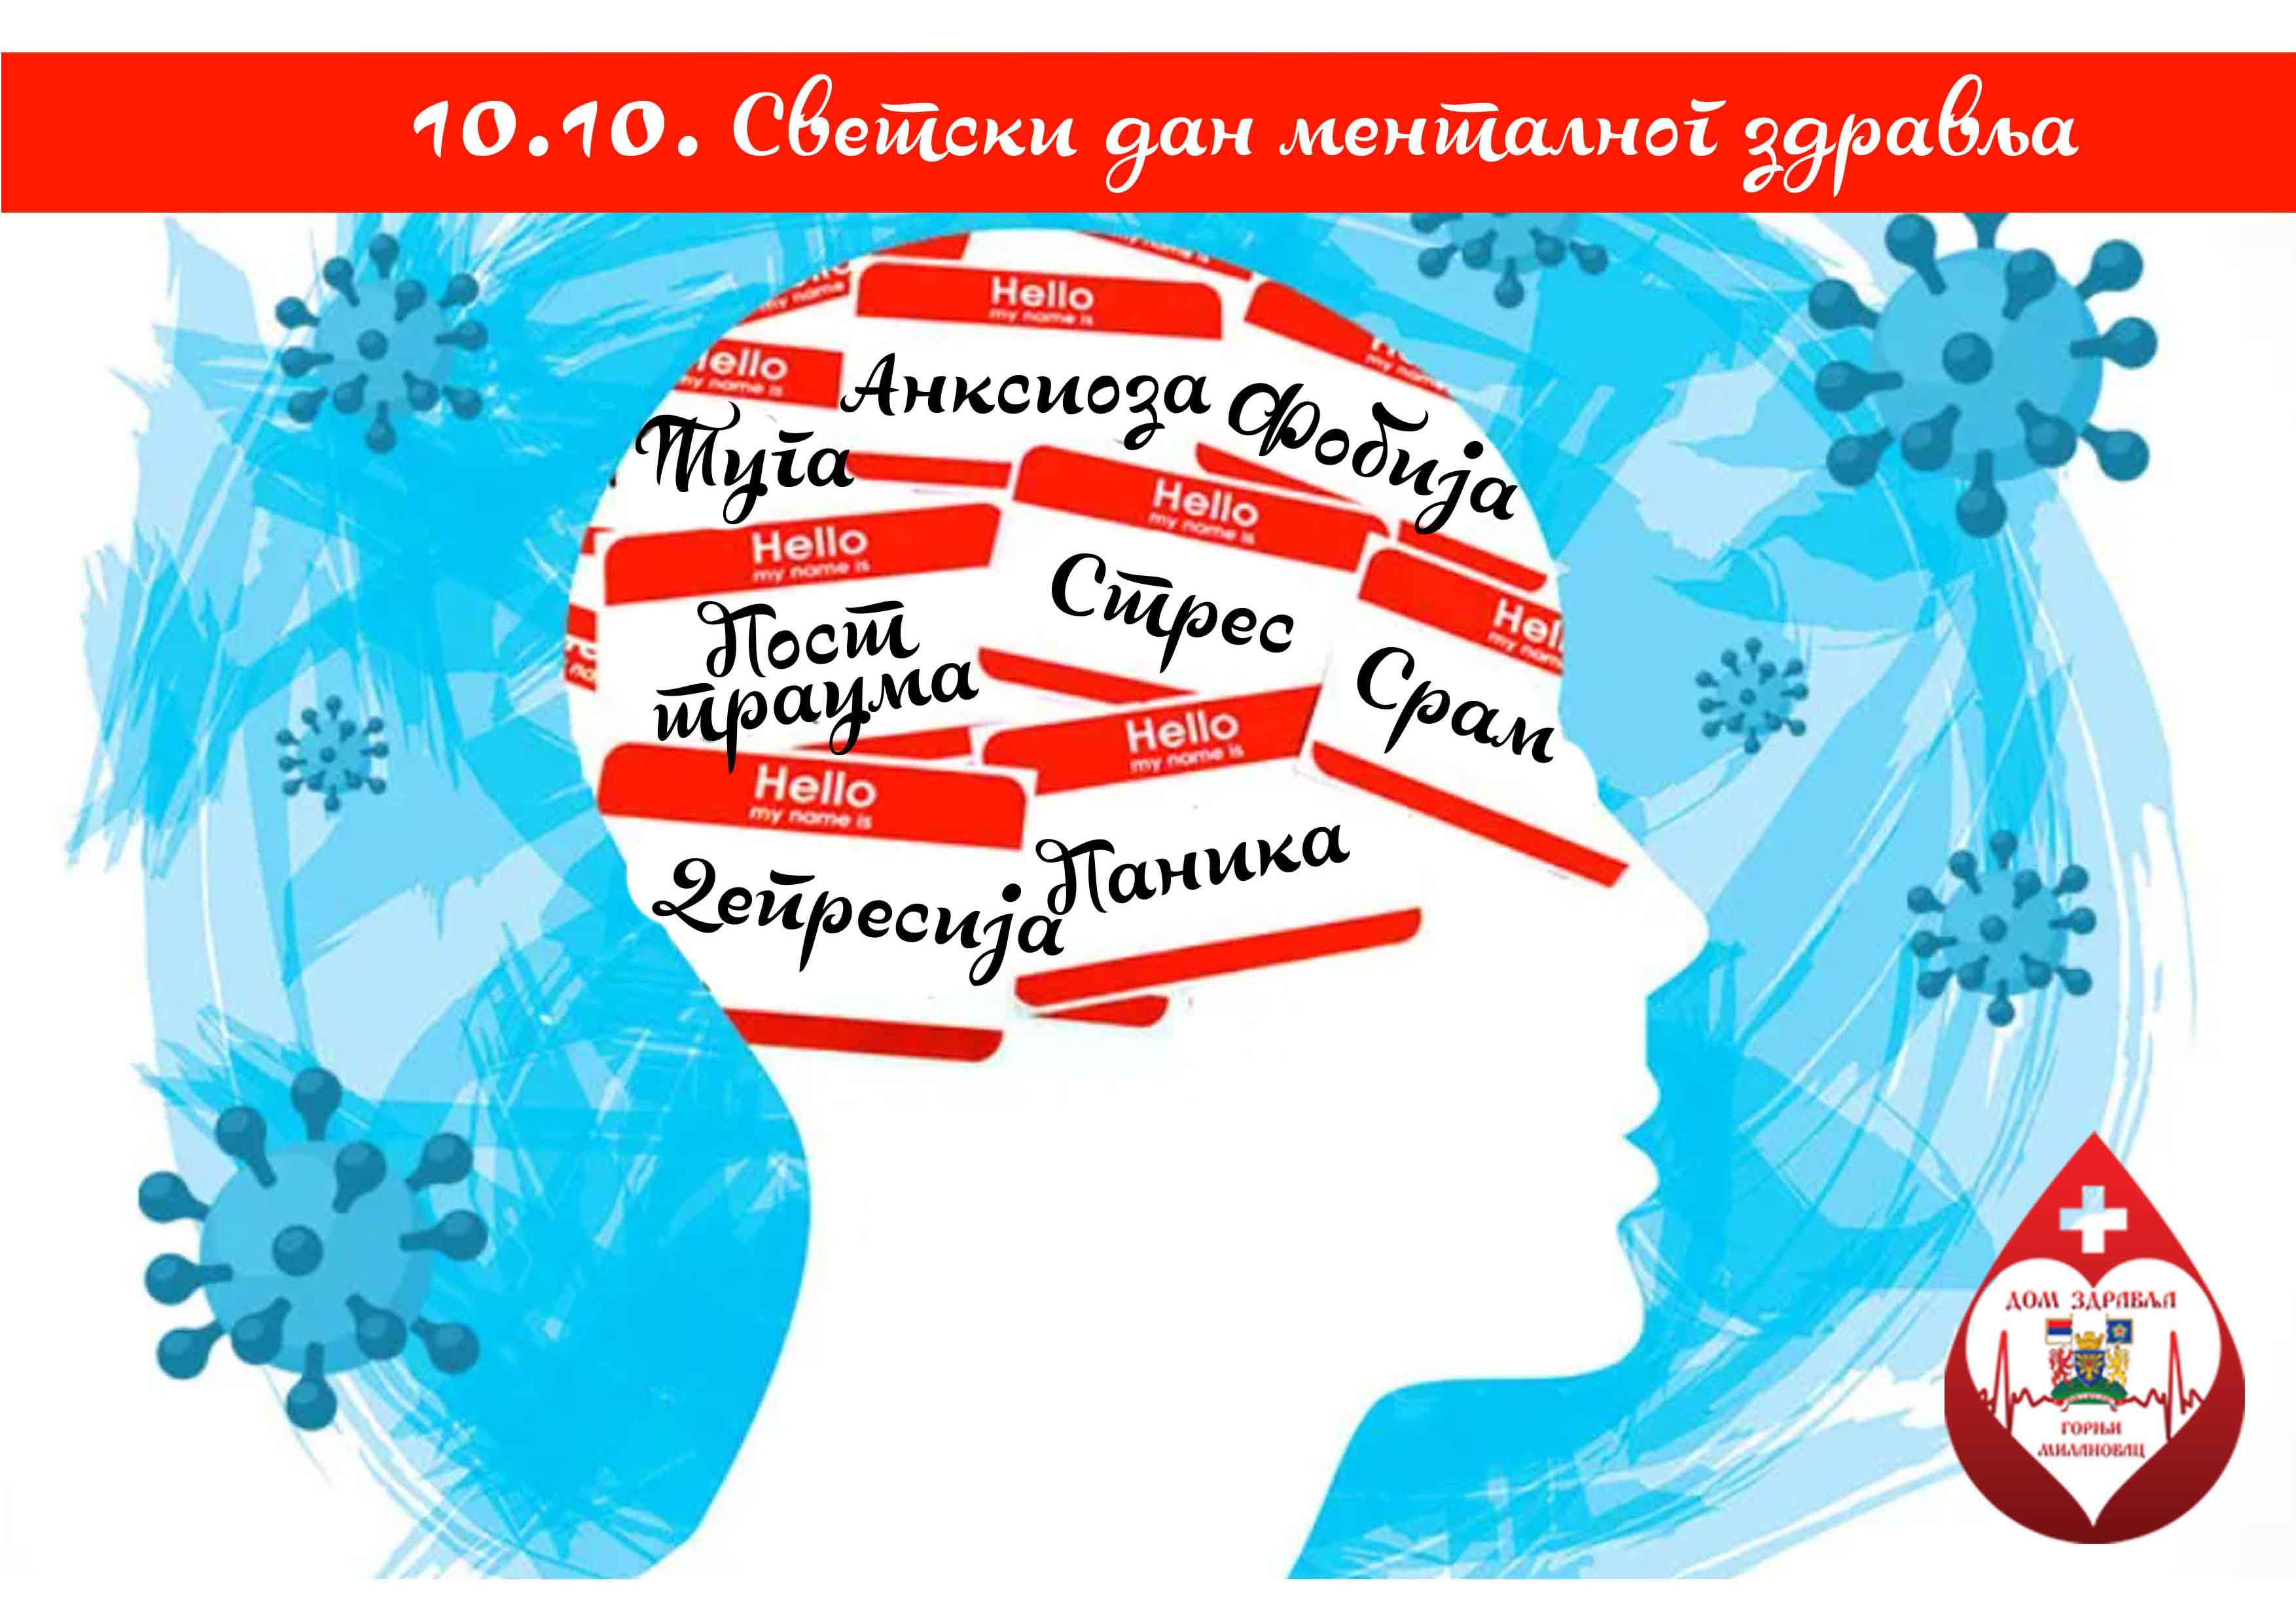 Svetski dan mentalnog zdravlja - 10. oktobar 2022. godine dom zdravlja Gornji Milanovac